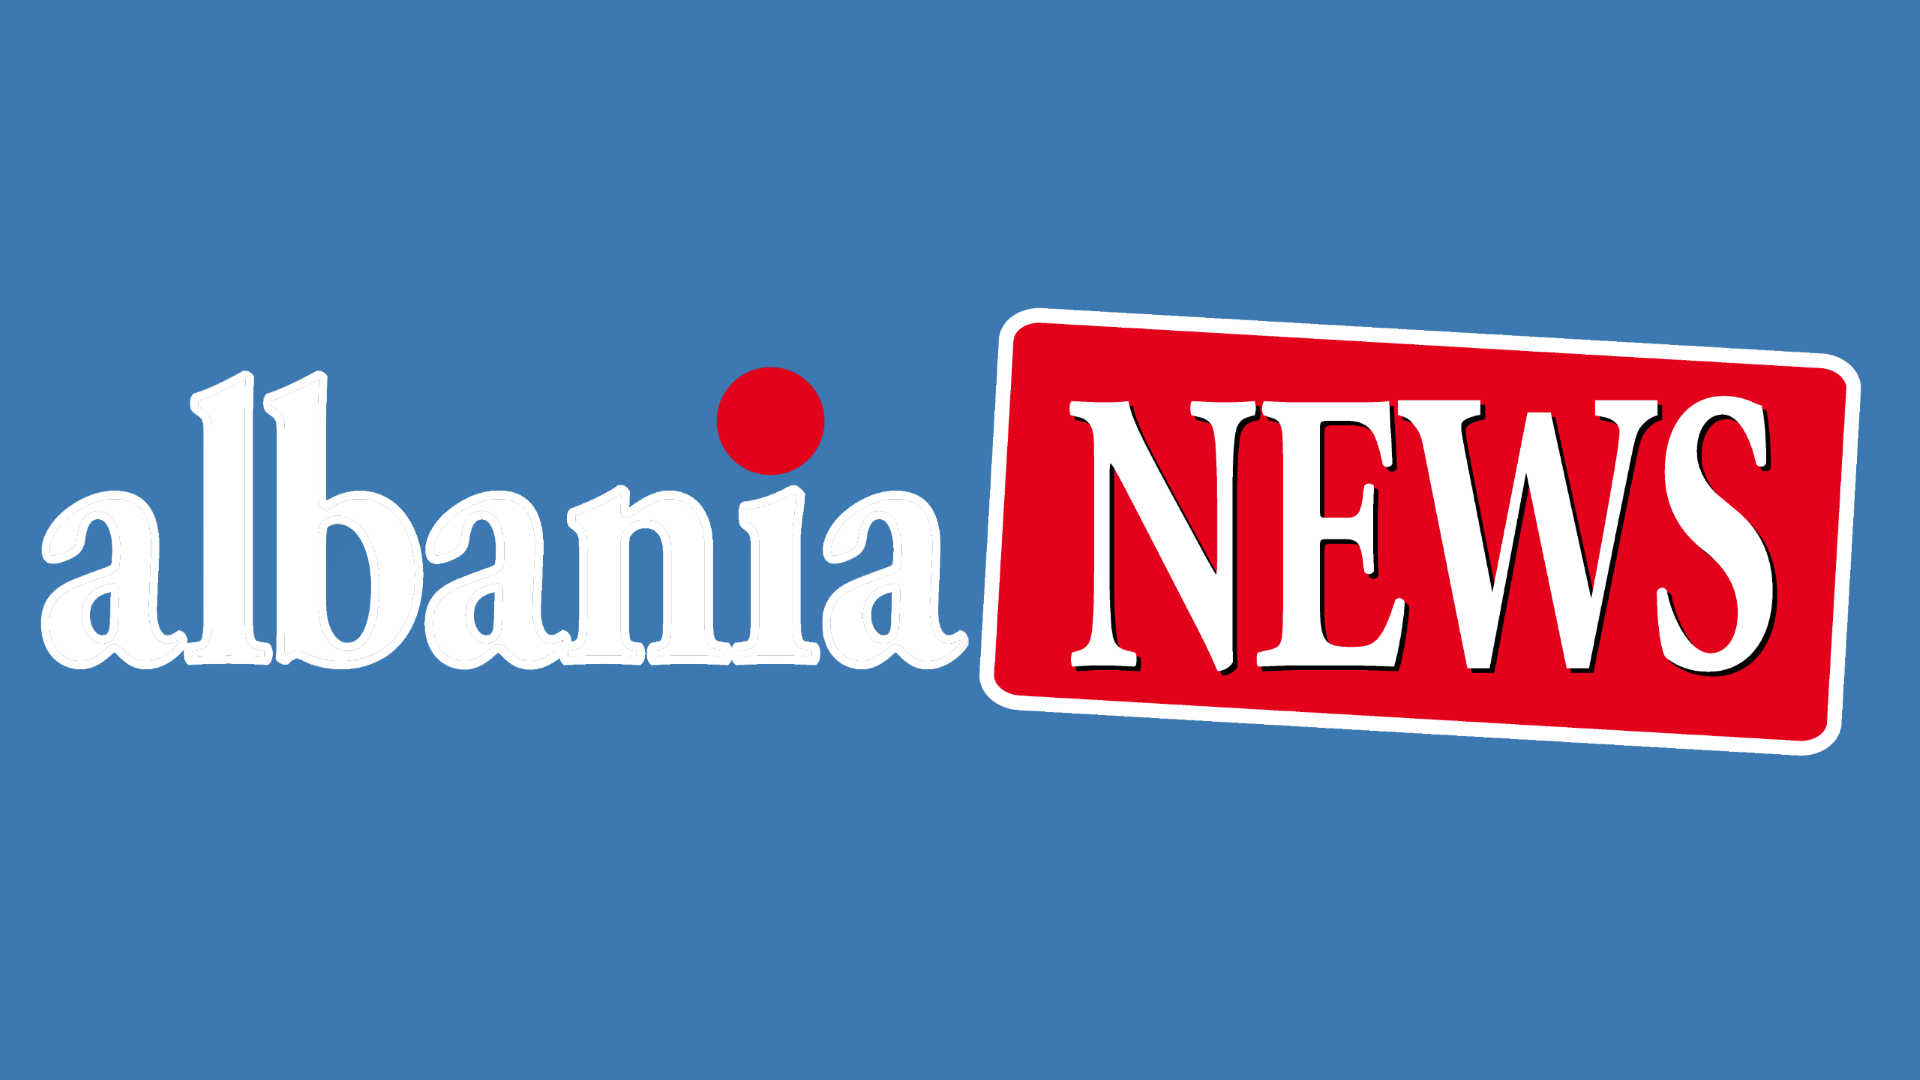 Albania News - Voce alla diaspora albanese in Italia